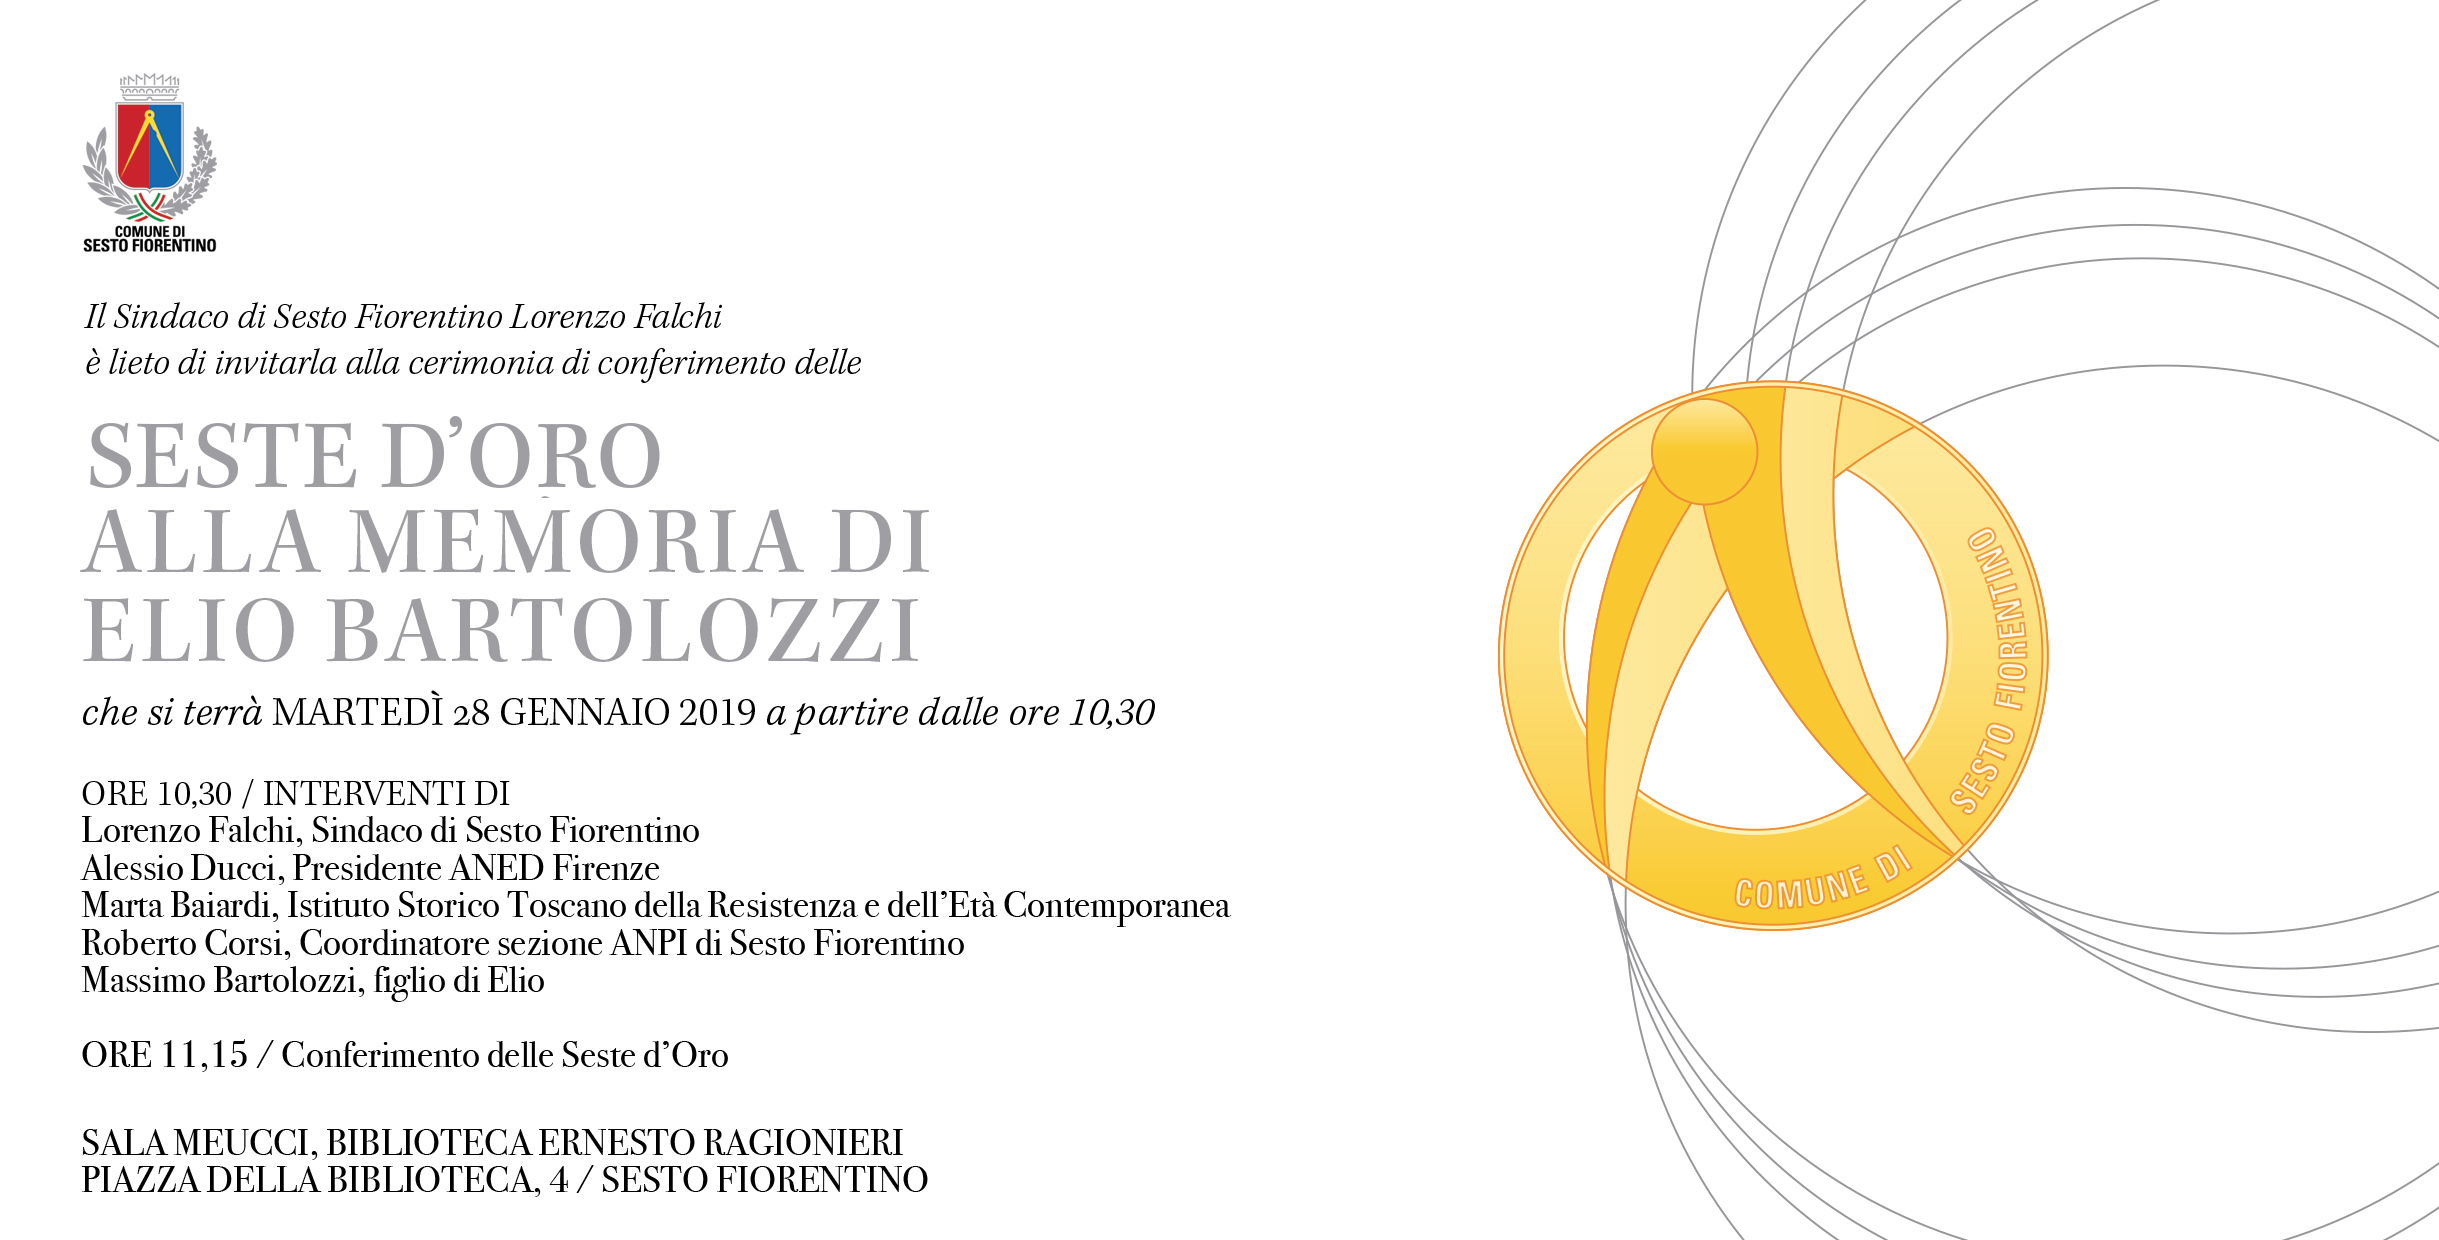 Conferimento delle Seste d'oro alla memoria di Elio Bartolozzi - locandina